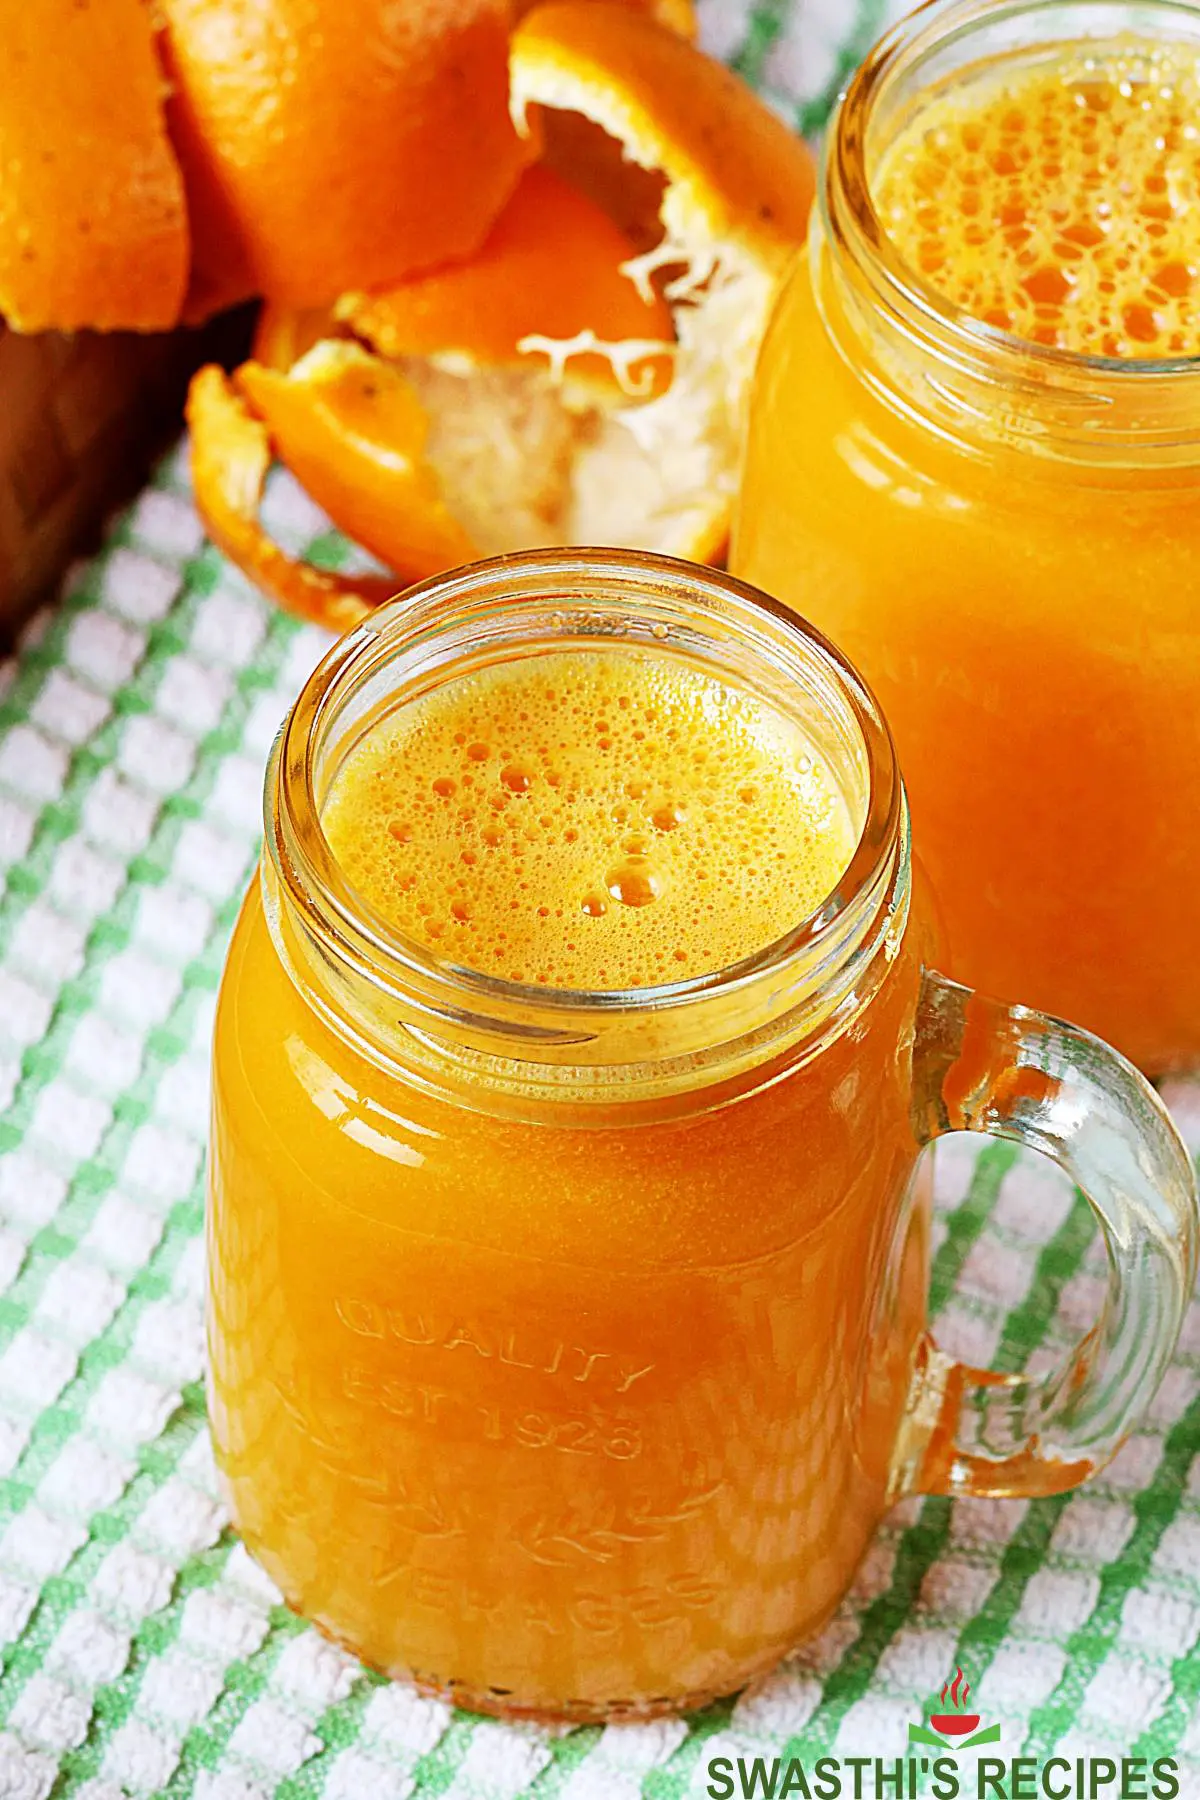 https://www.indianhealthyrecipes.com/wp-content/uploads/2021/06/orange-juice.jpg.webp